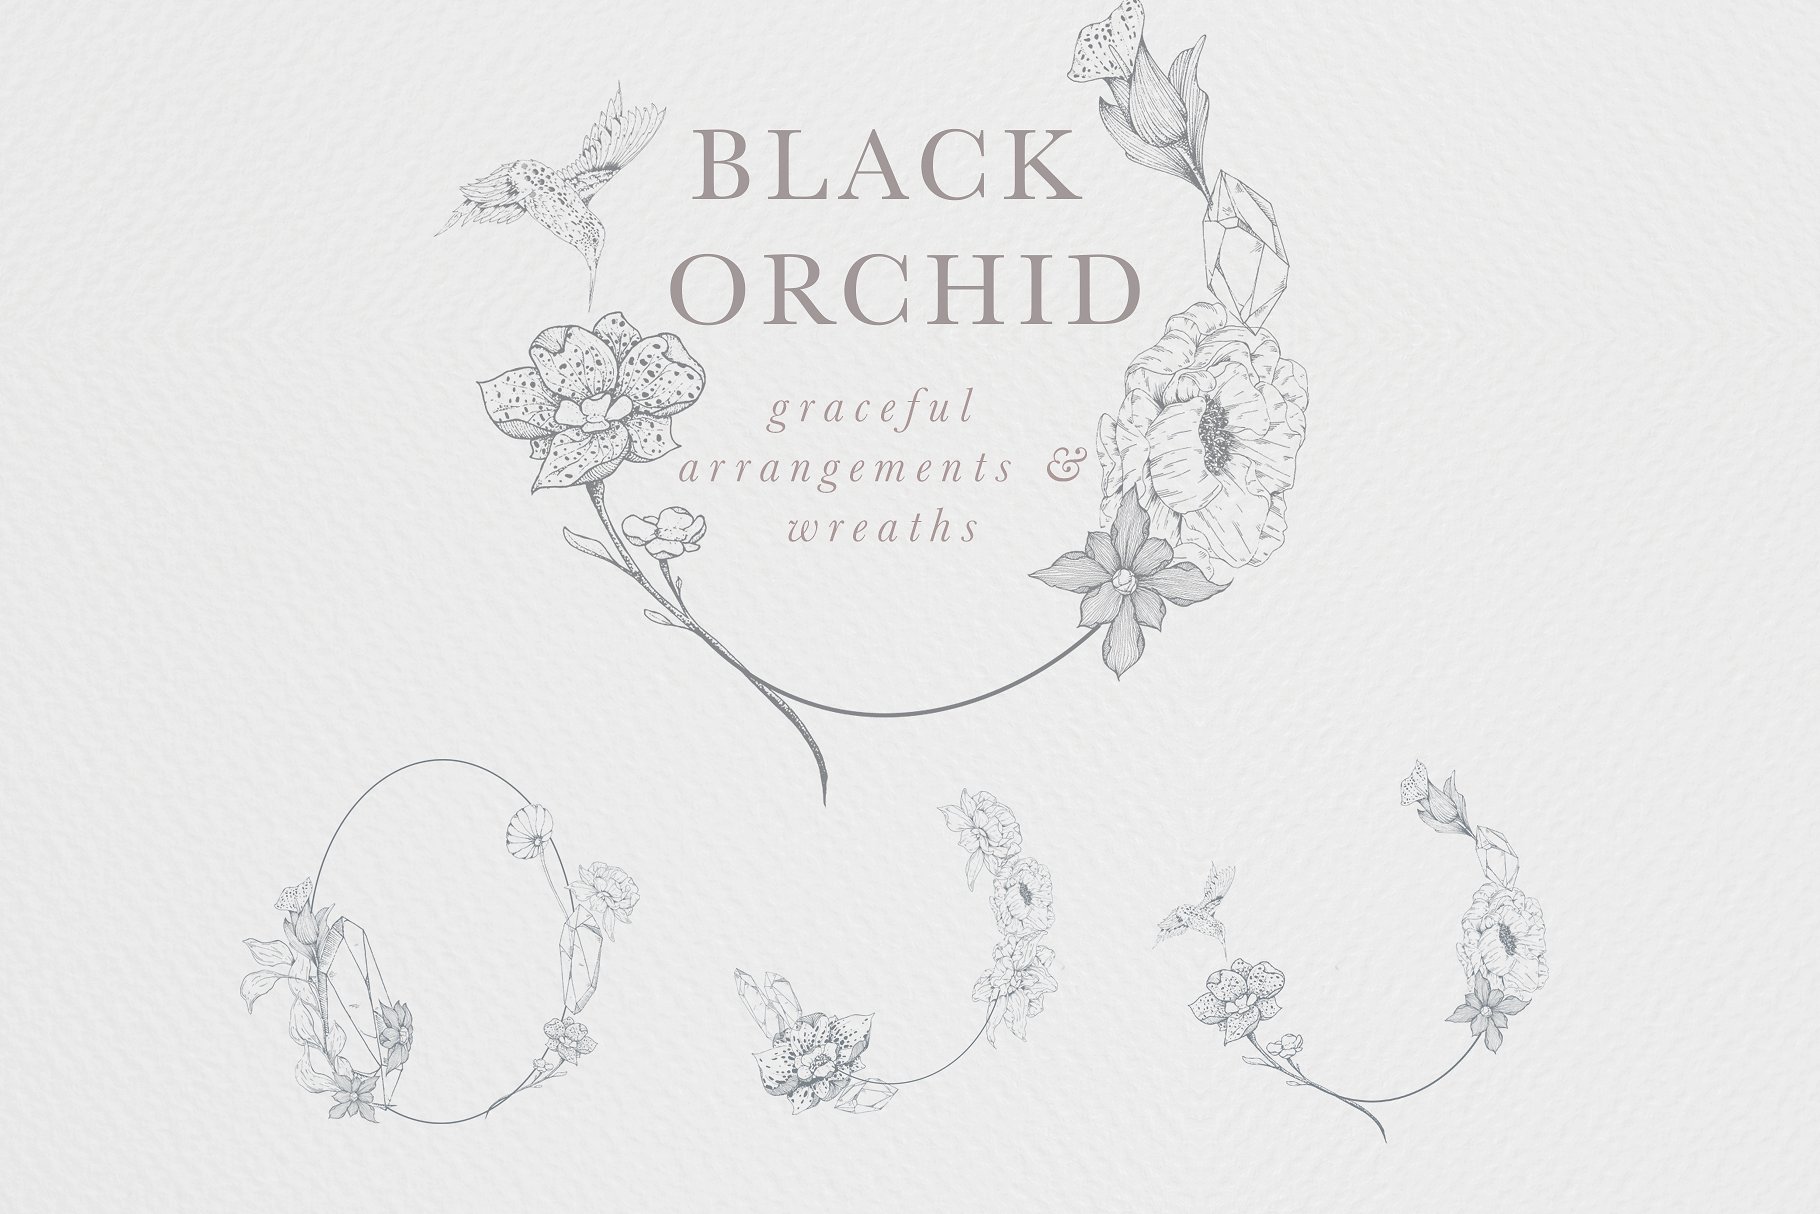 虚实结合黑色背景手绘矢量花卉图形素材 Black Orchid Illustration Set插图5